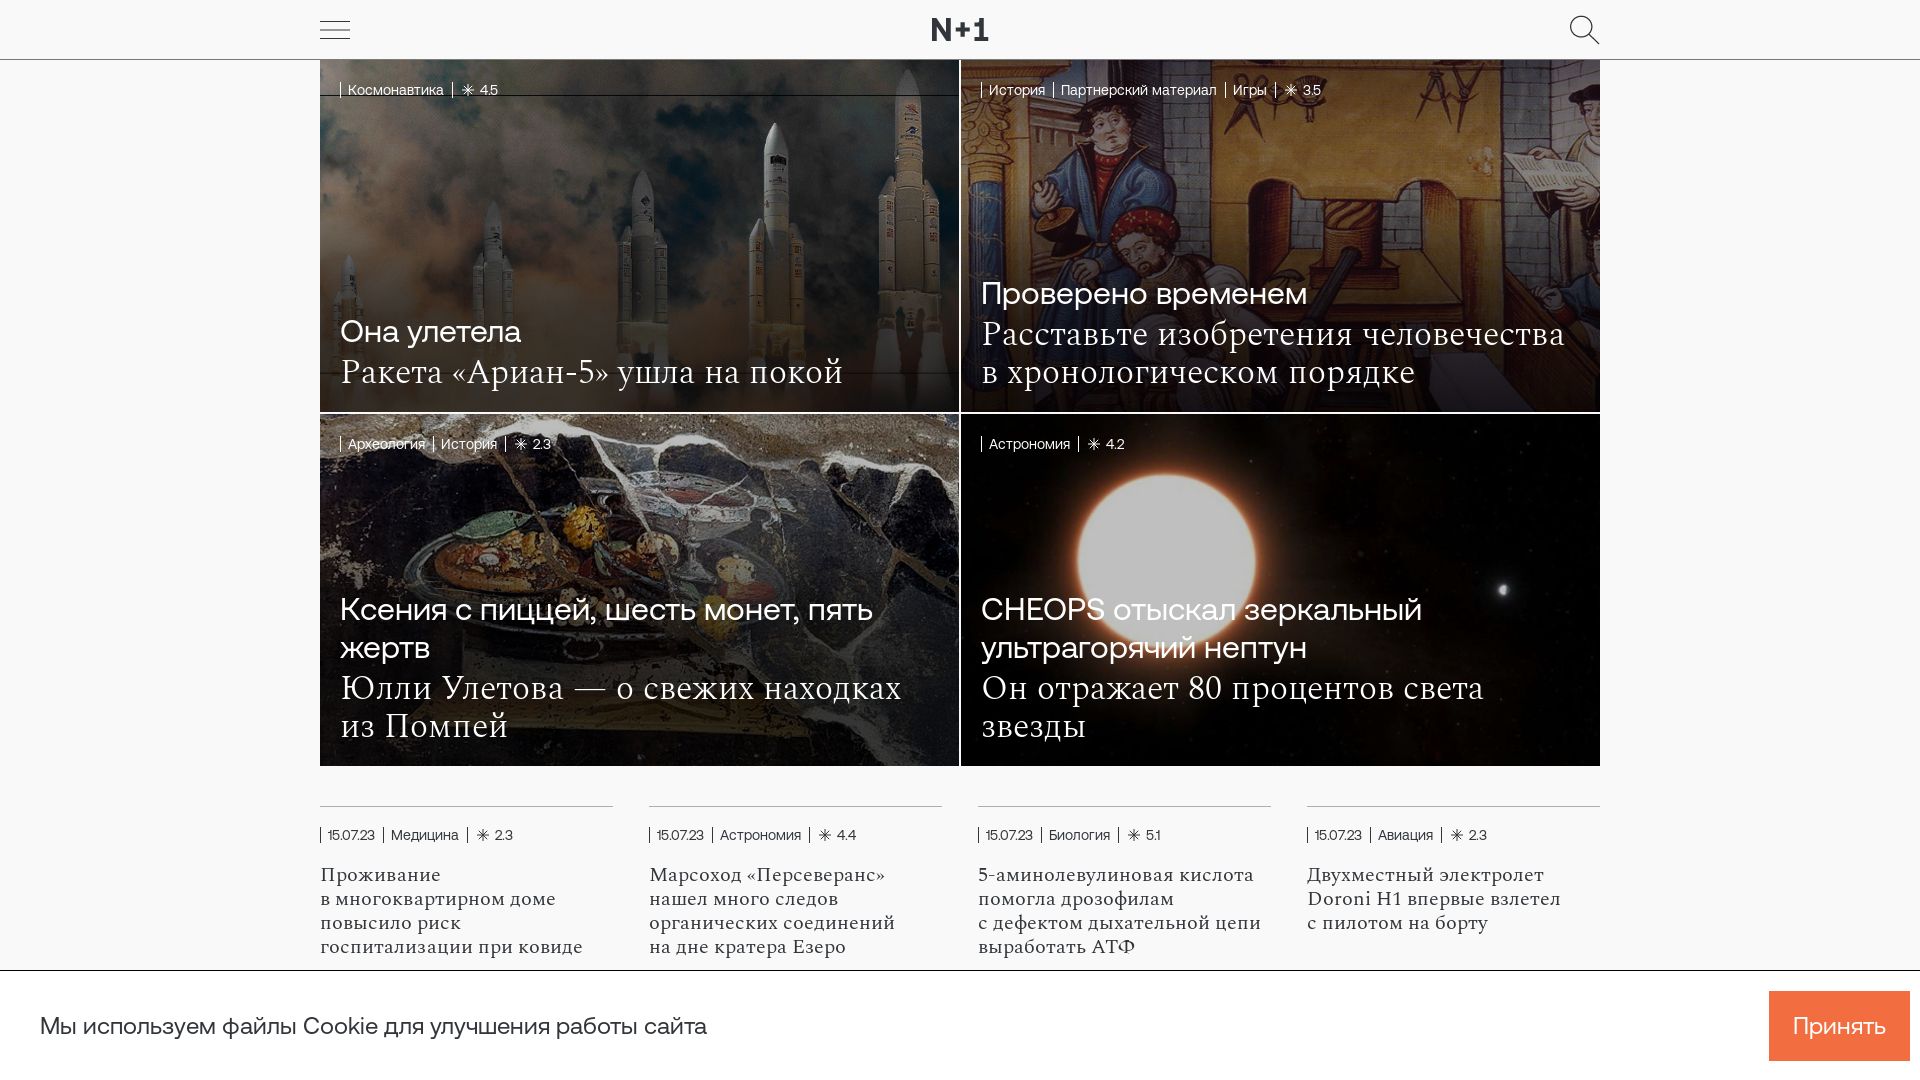 Status do site nplus1.ru está   ONLINE